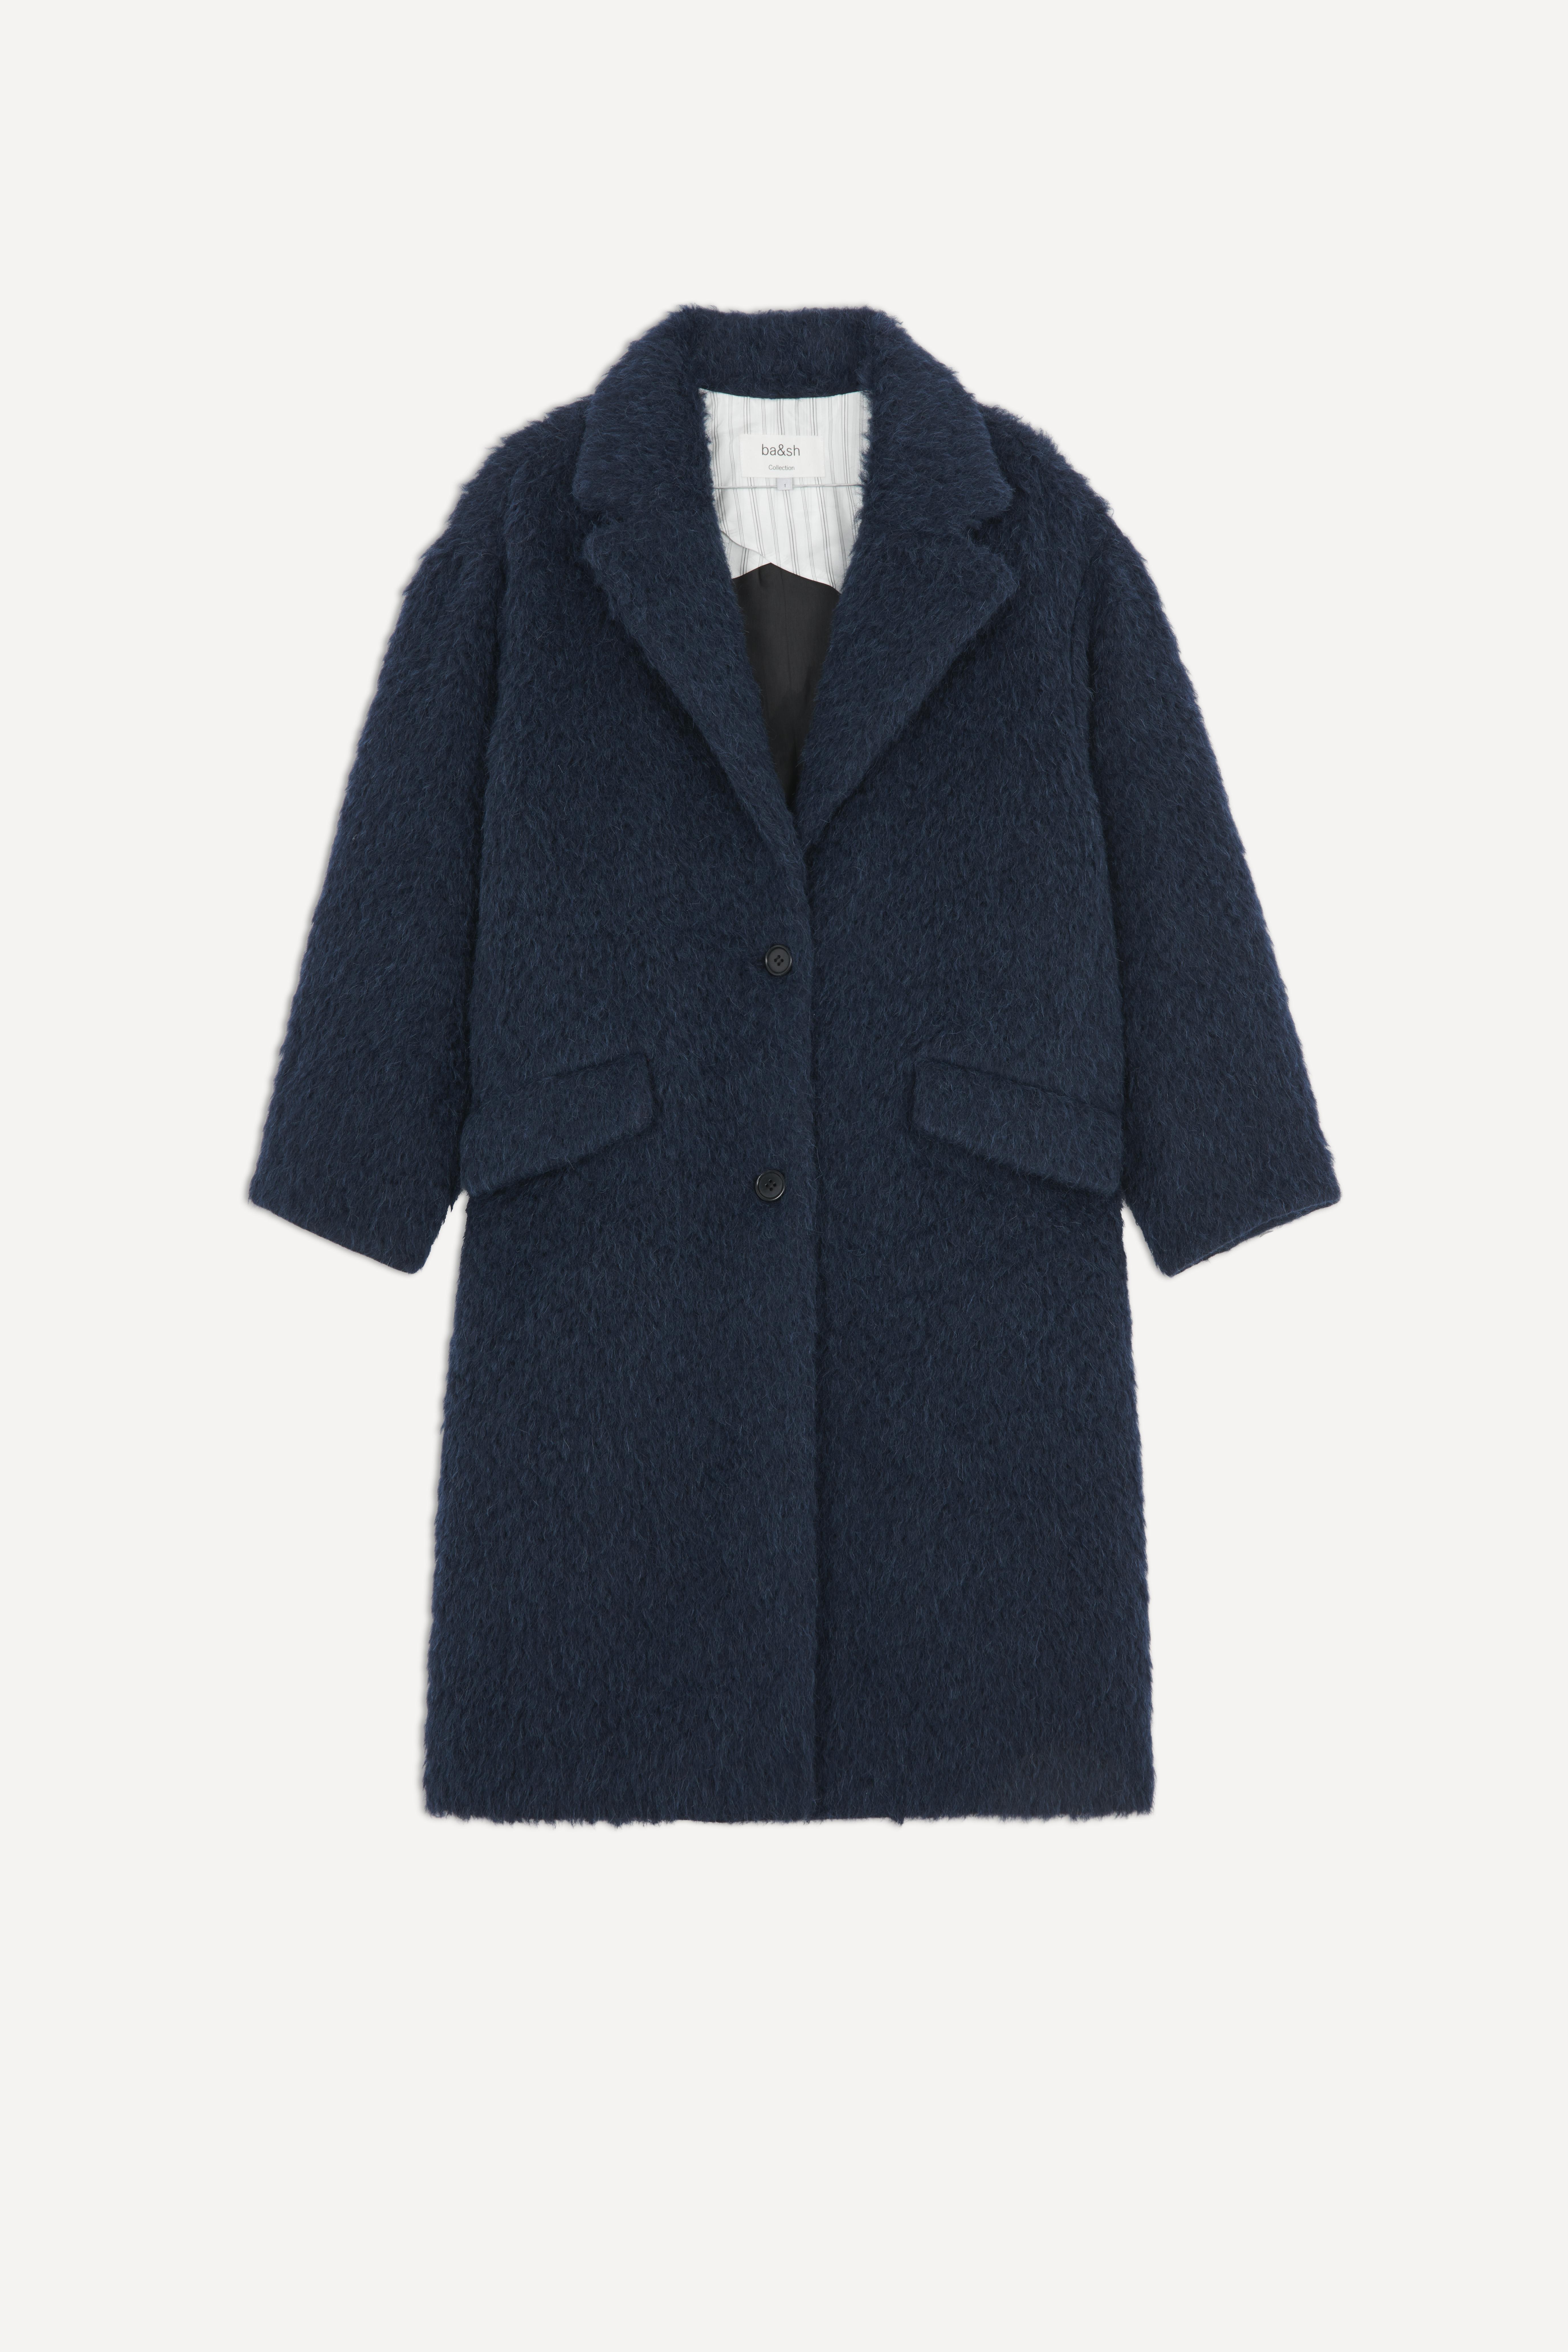 Ba&sh Wool Adele Coat in Dark Blue (Blue) - Lyst